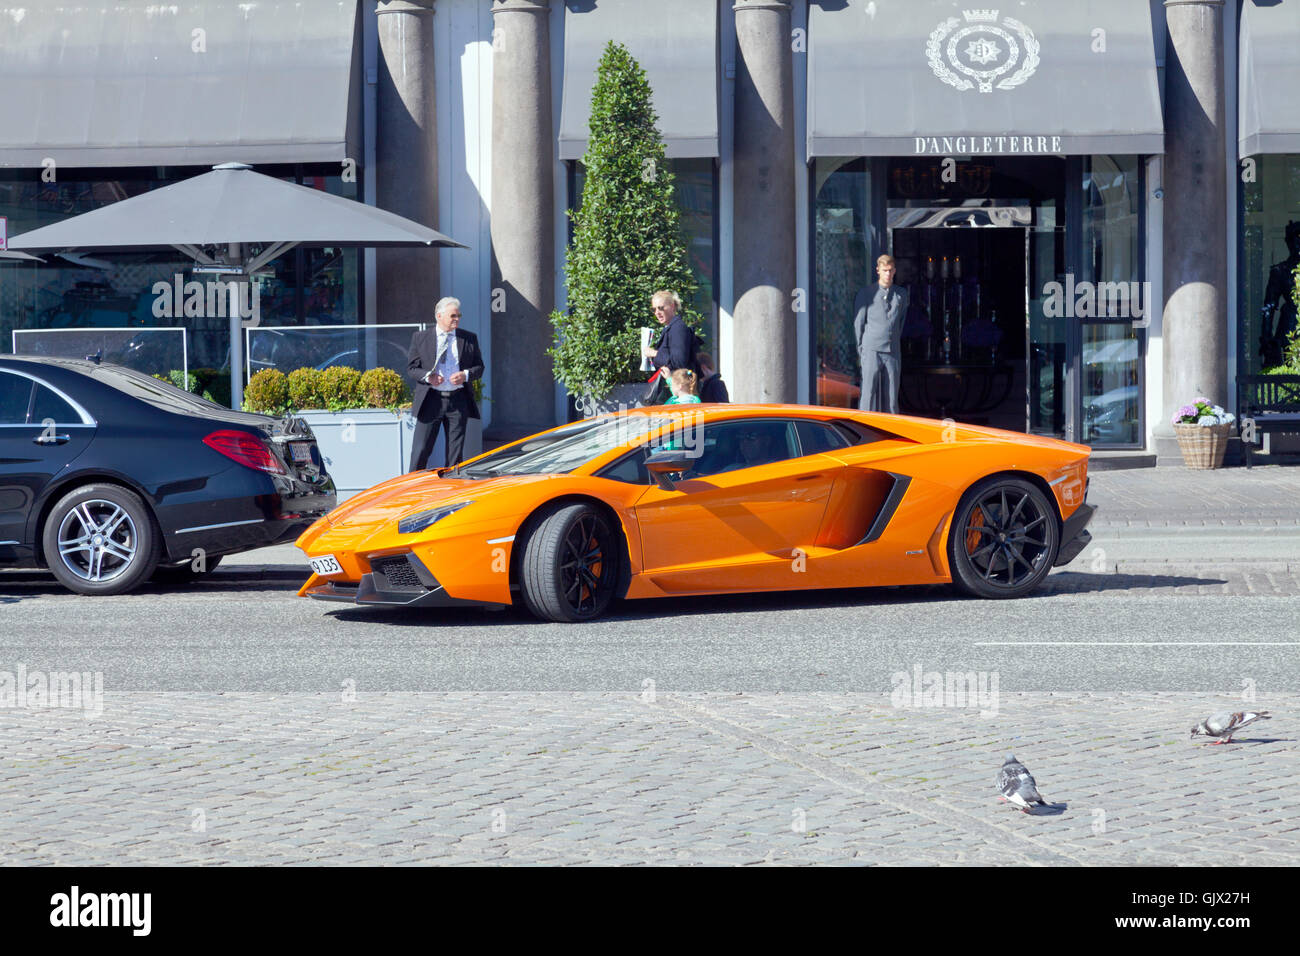 Lamborghini Aventador Coupé Orange étant parallèles garée devant l'entrée de l'hôtel d'Angleterre à Copenhague. Banque D'Images